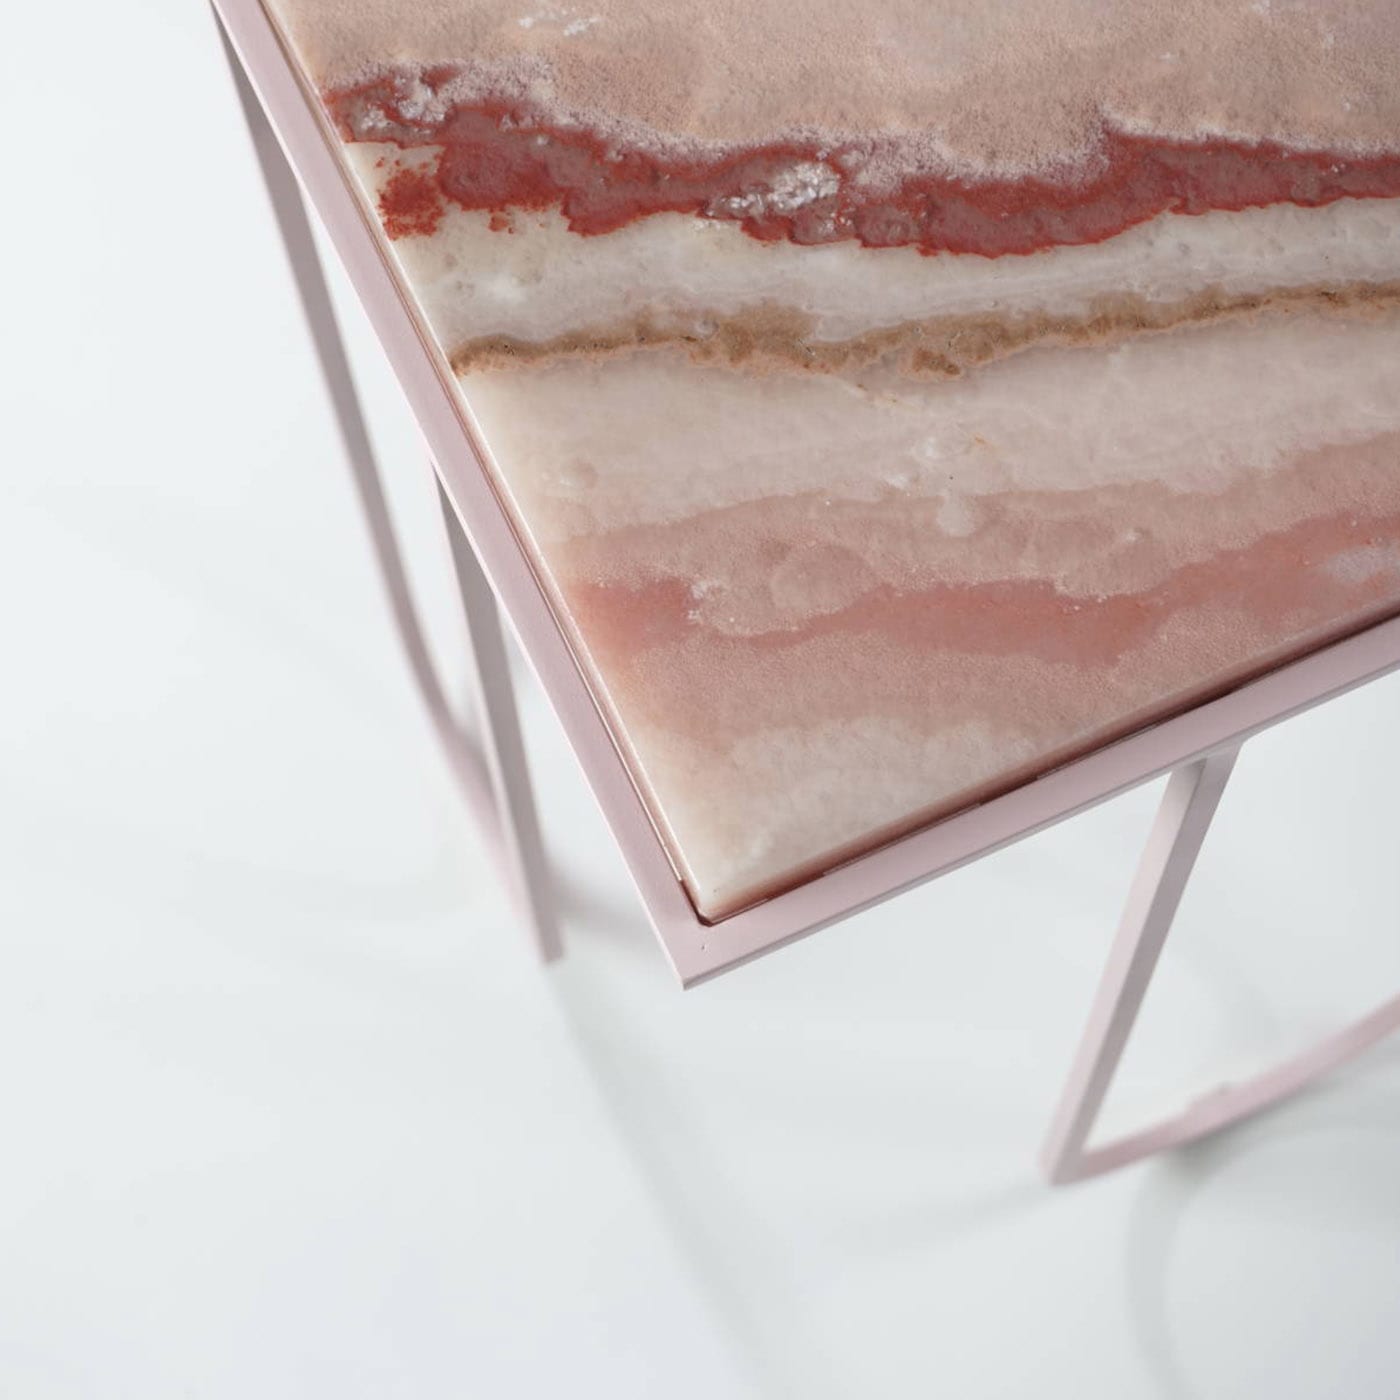 LoLa Pink Onyx Side Table - DF DesignLab